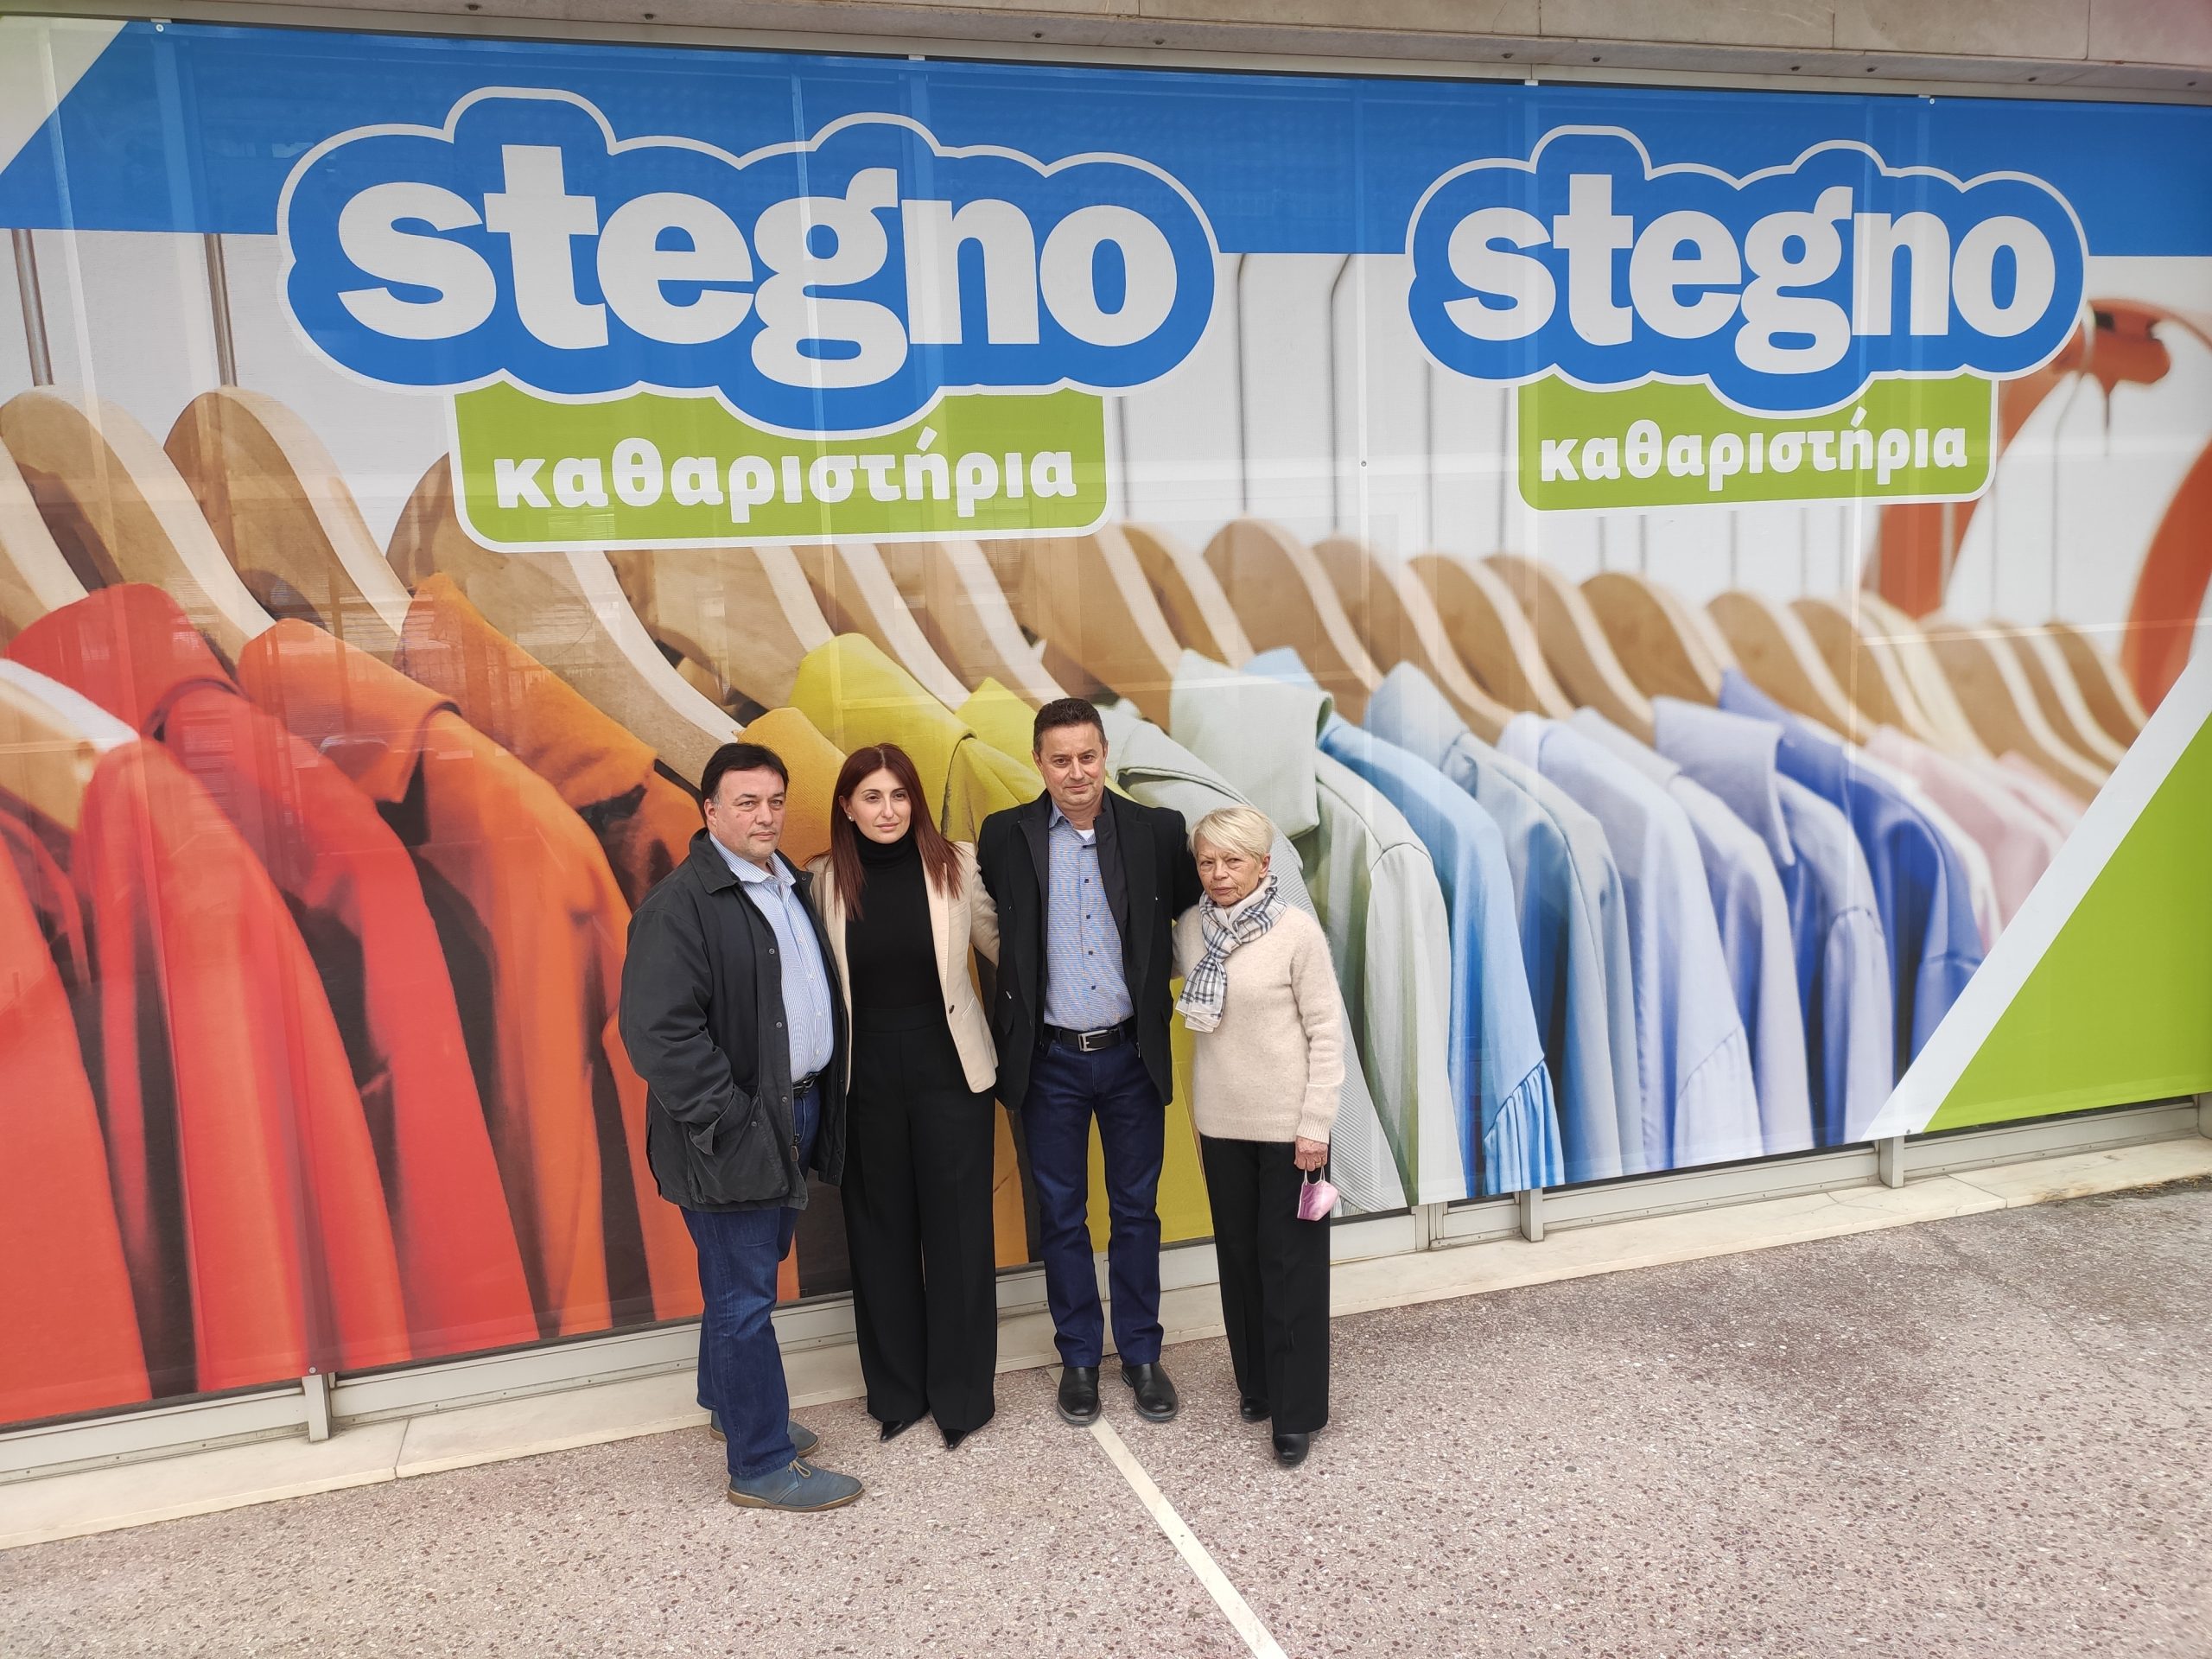 Ιστορικό…άνοιγμα για το Stegno στην Γλυφάδα